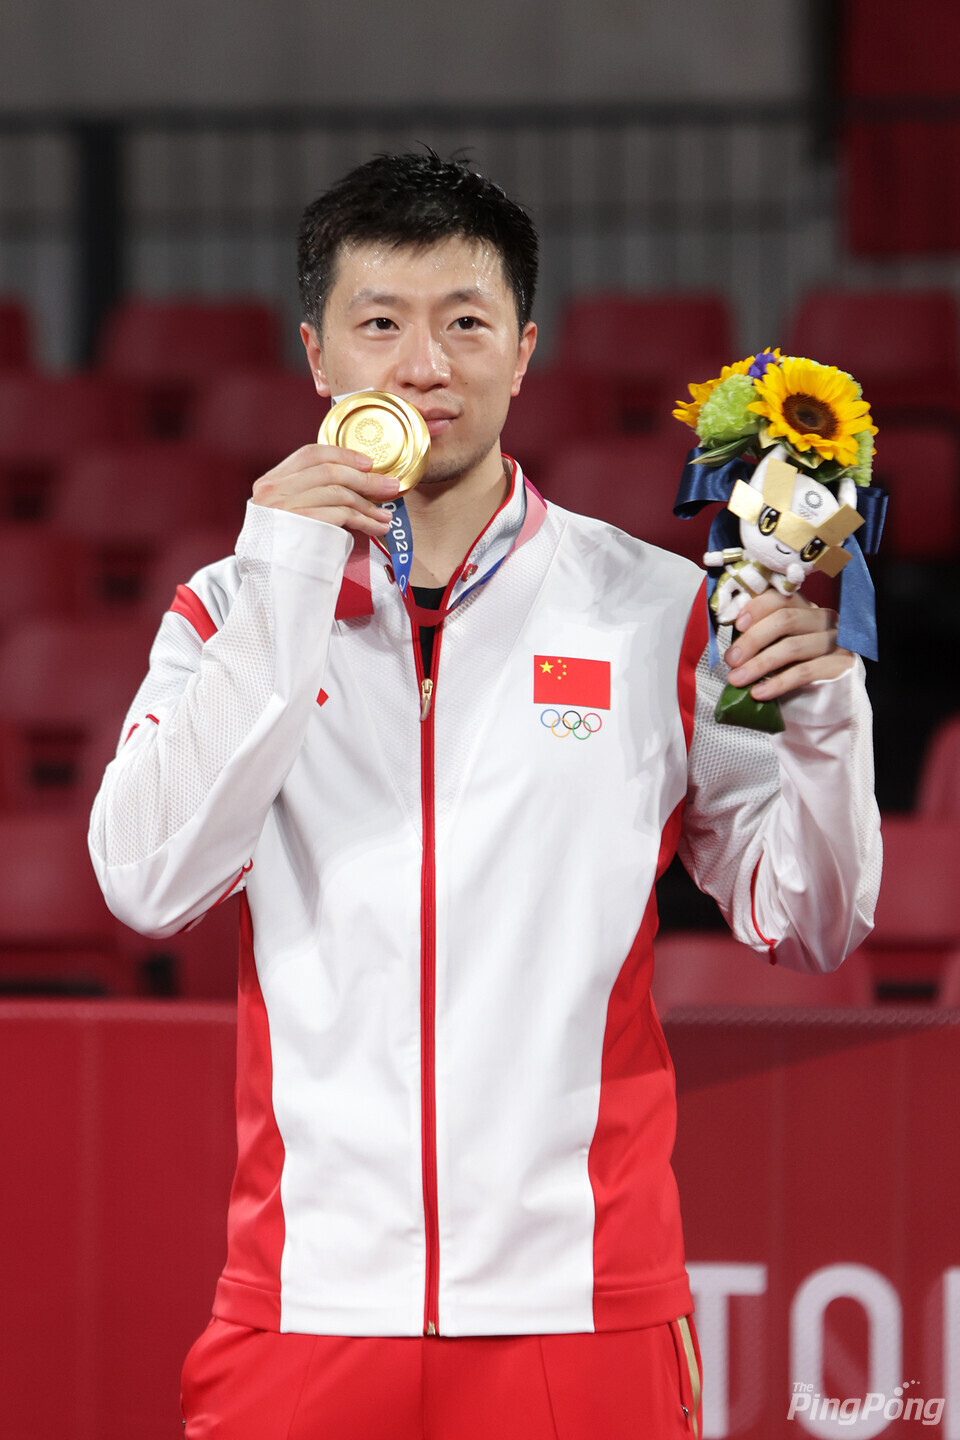 ▲ 마롱은 올림픽 남자단식 2회 연속 금메달을 획득한 유일한 선수다. 사진은 지난 도쿄올림픽에서의 모습.